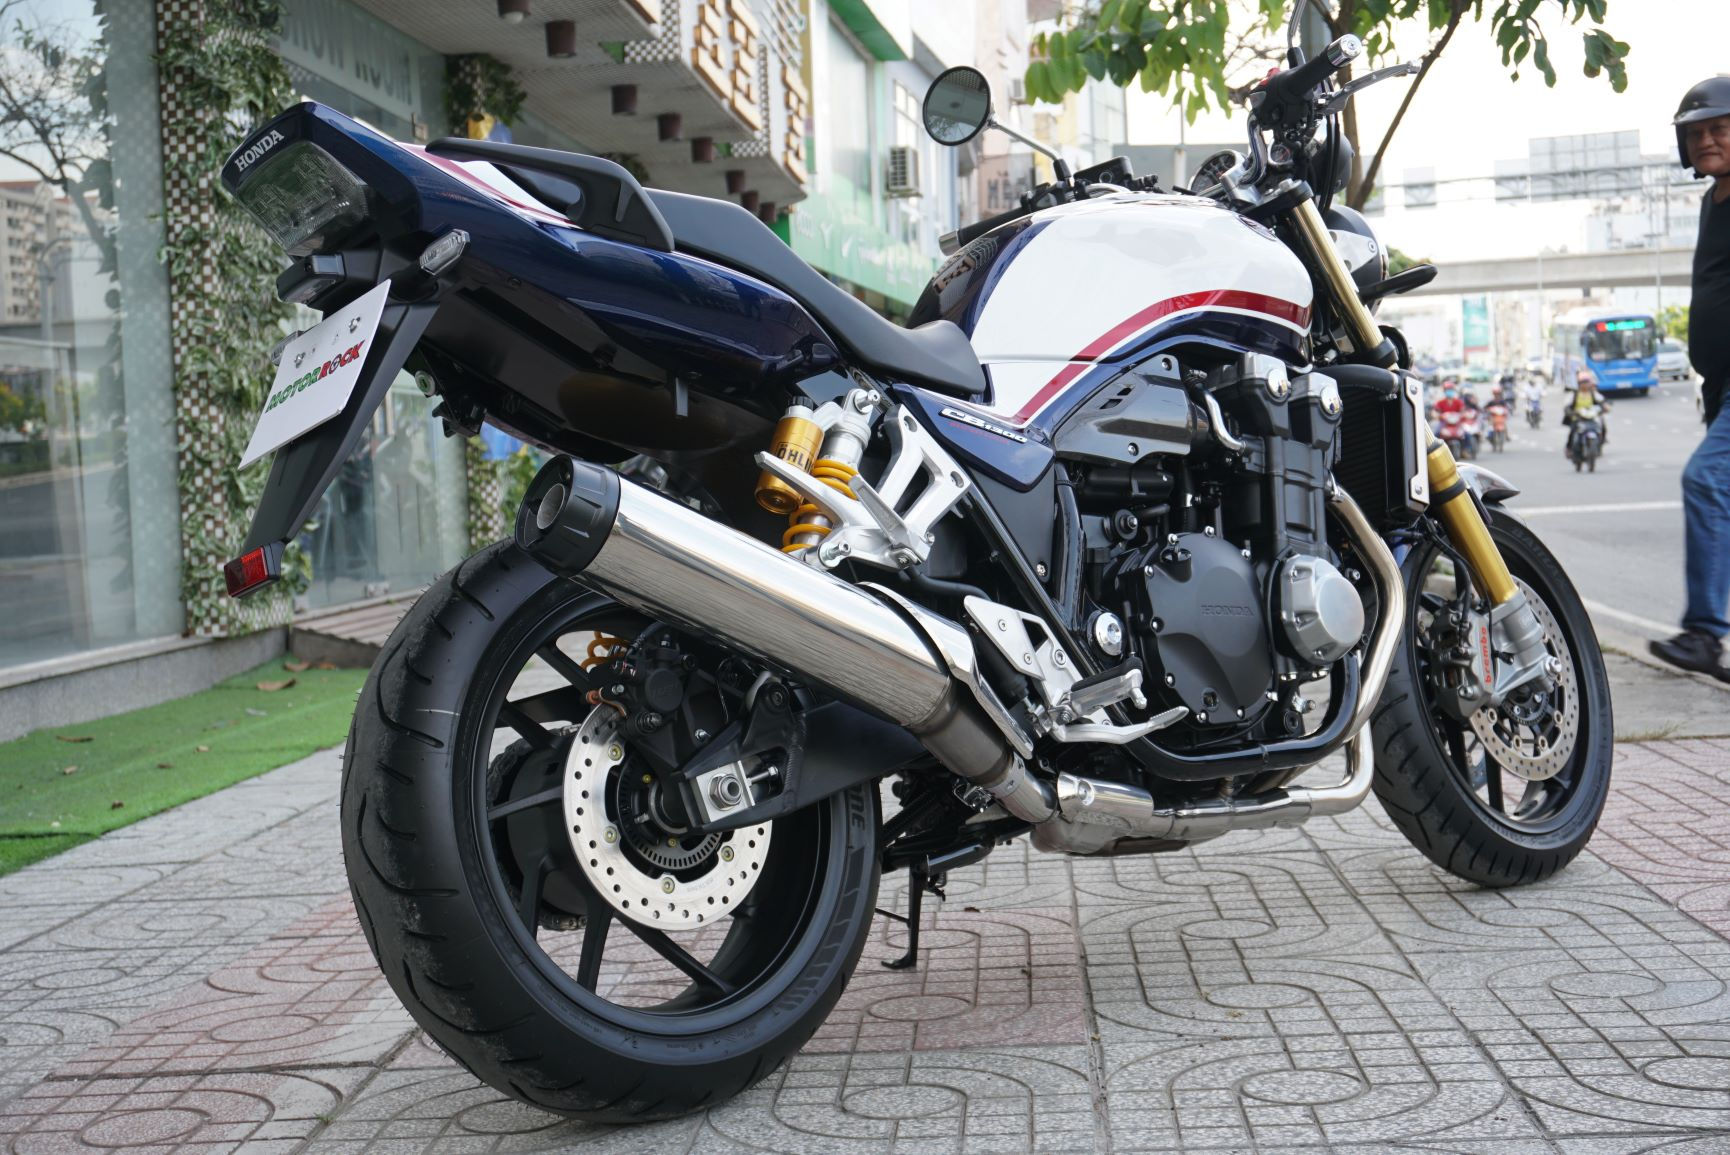 Ngắm chiếc Honda CB1300 SP nhập Mỹ, giá gần nửa tỷ đồng ở Sài Gòn